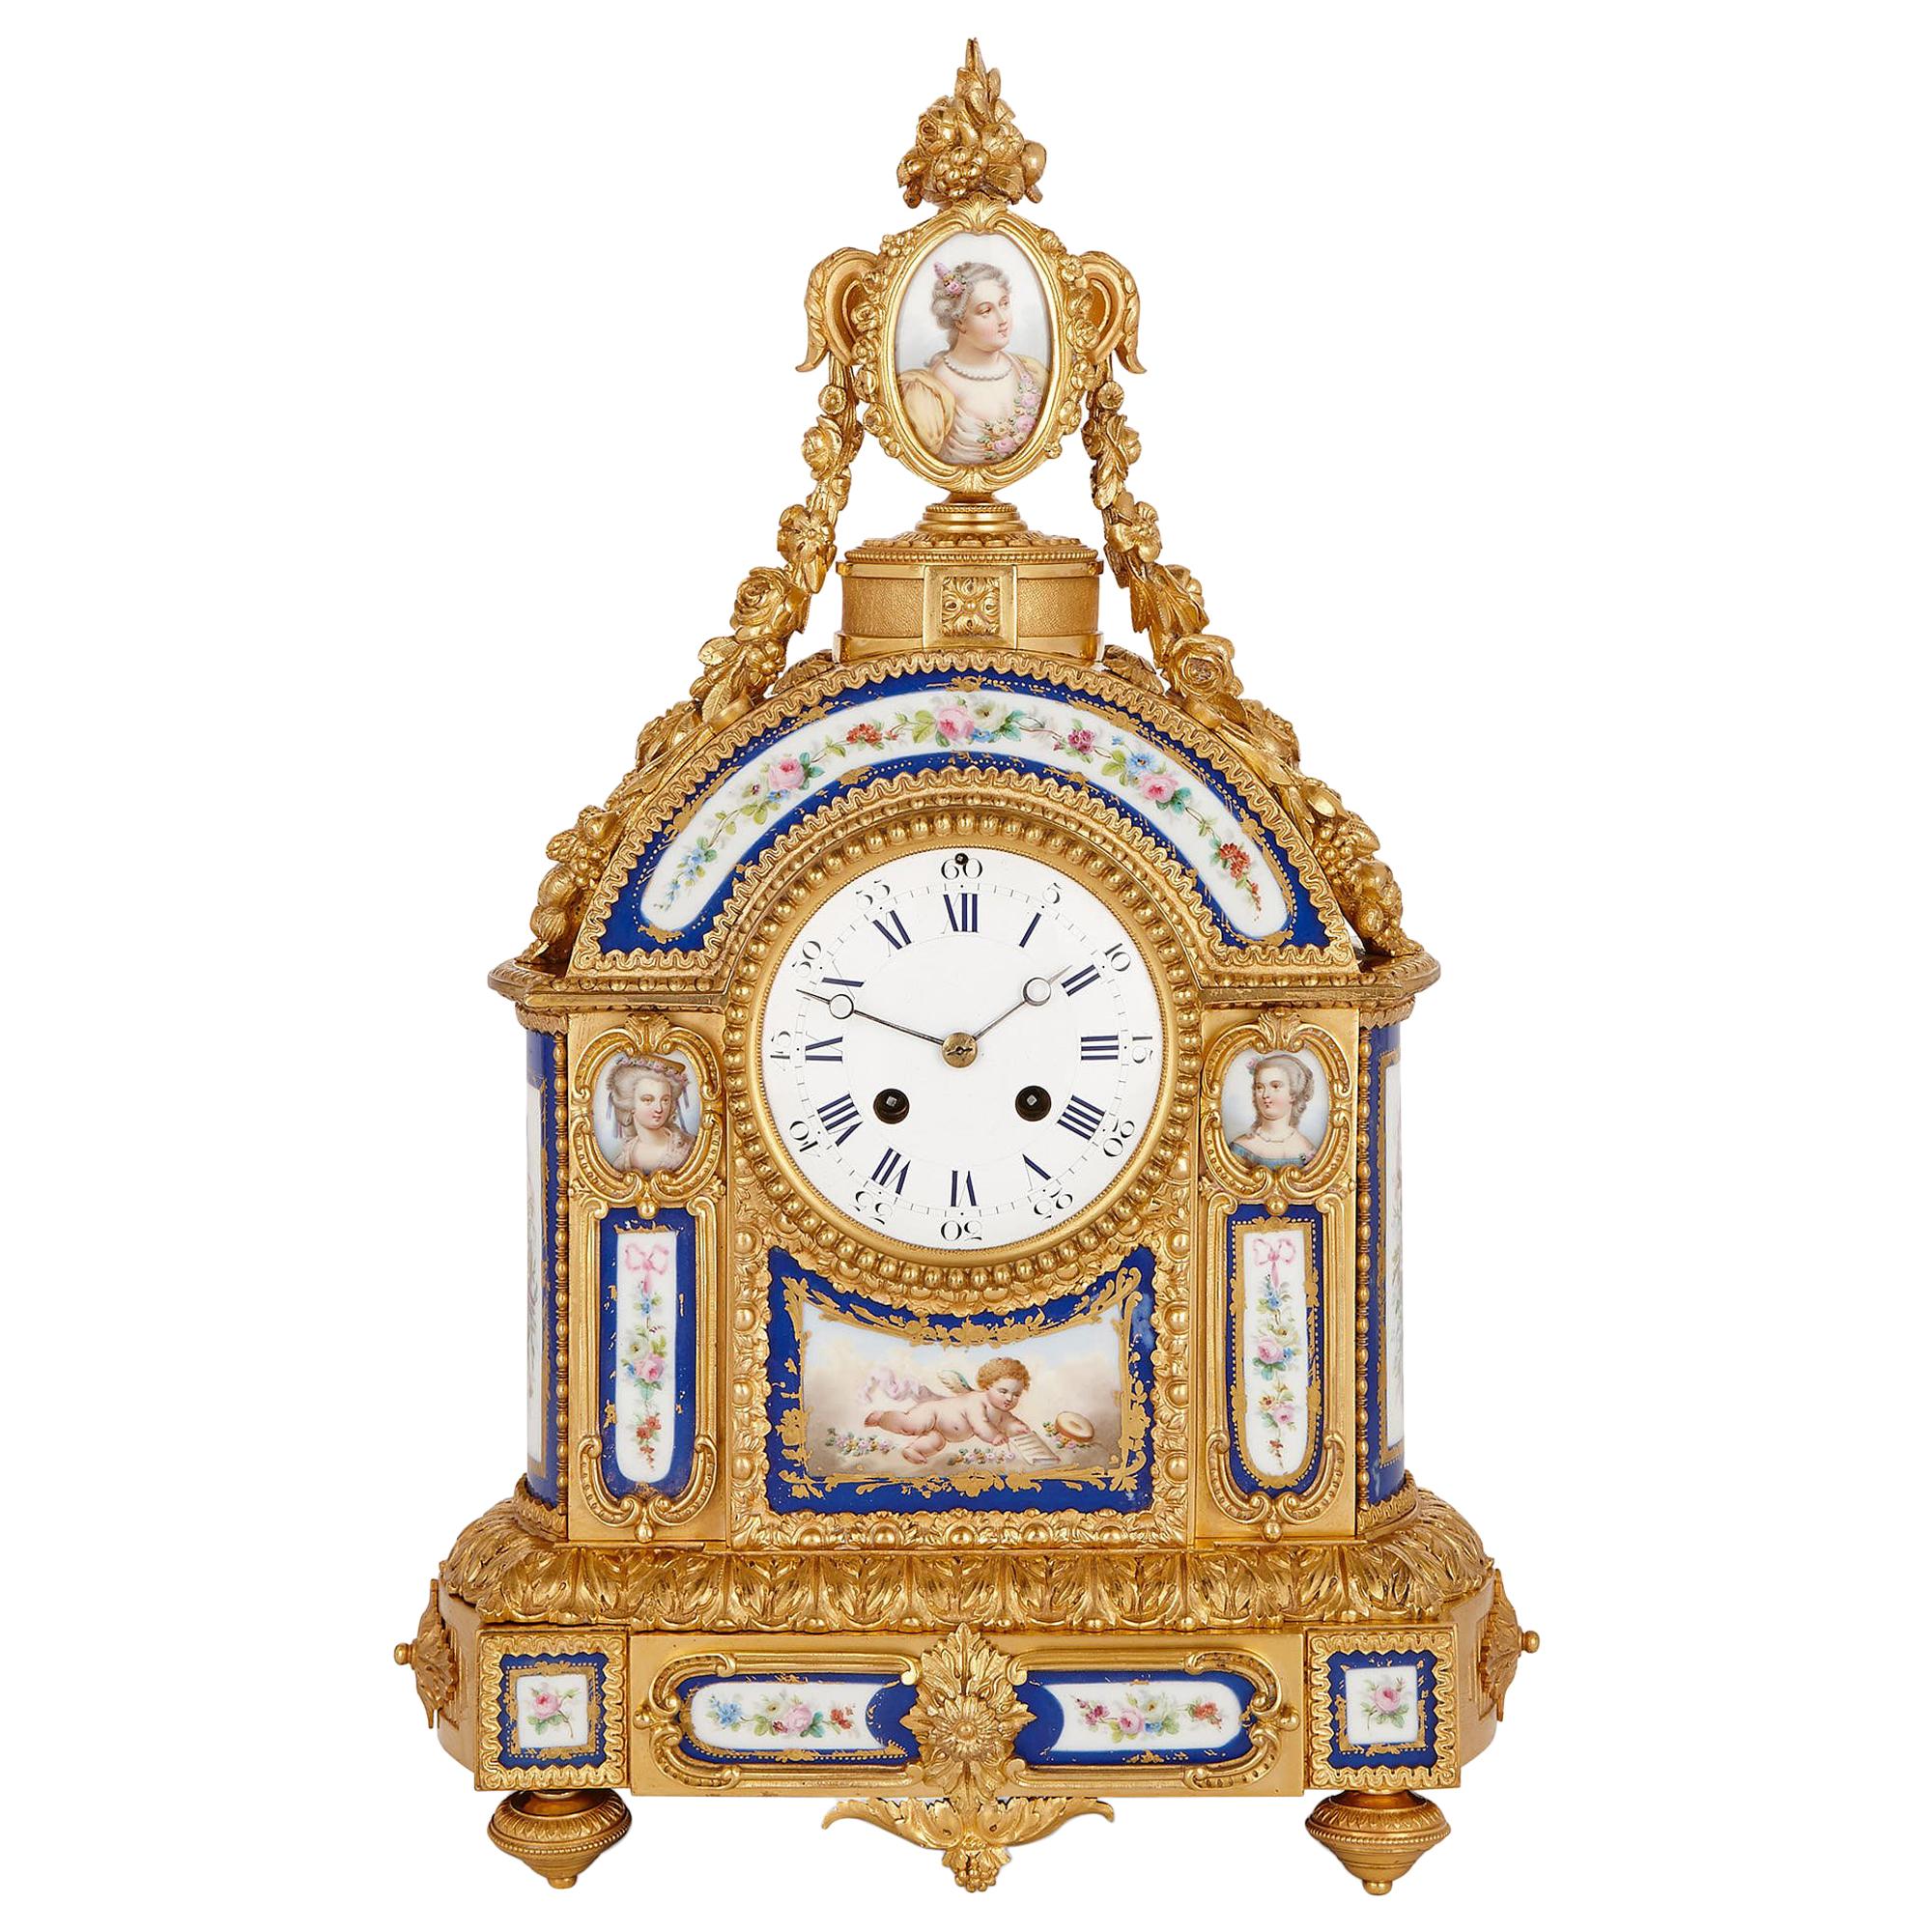 Sèvres Style Gilt Bronze and Porcelain Mantel Clock